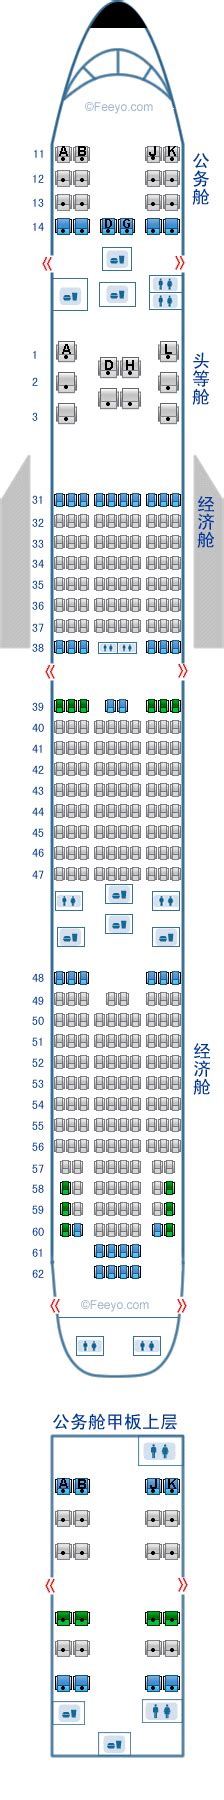 空客321哪个座位好_空客a321哪个座位好 - 随意优惠券